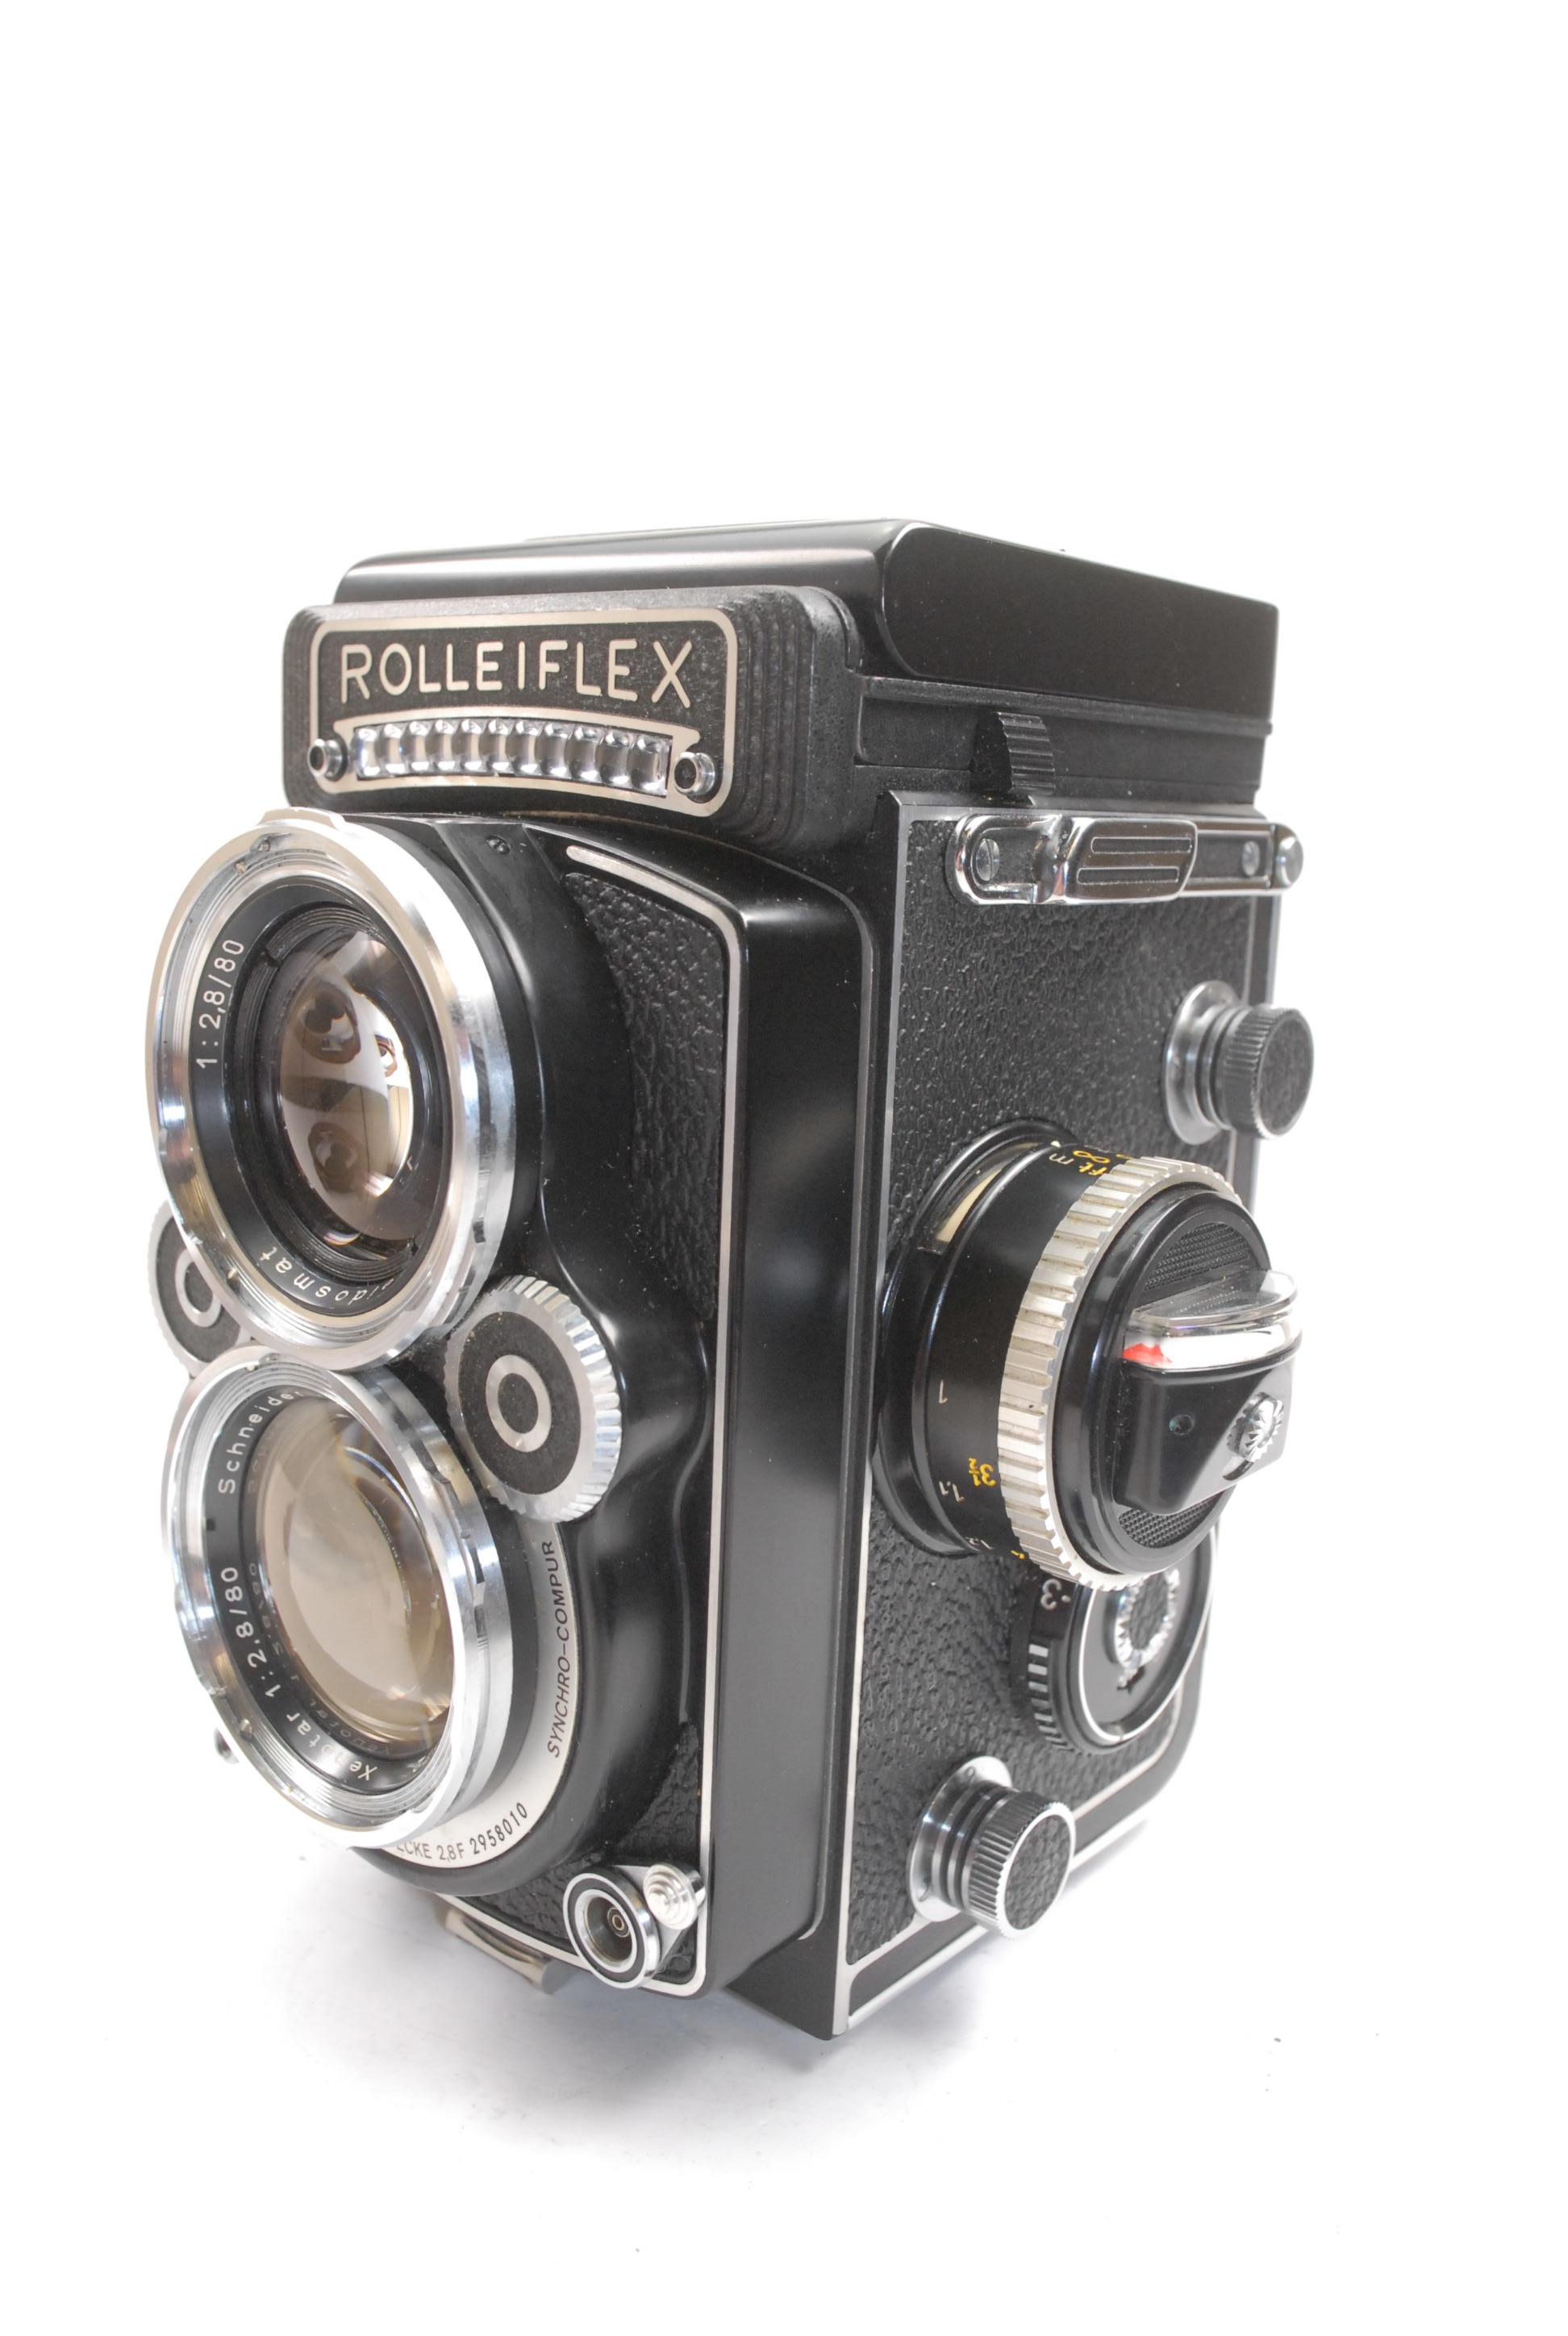 Medium & Large Format Cameras, Lenses, Accessories